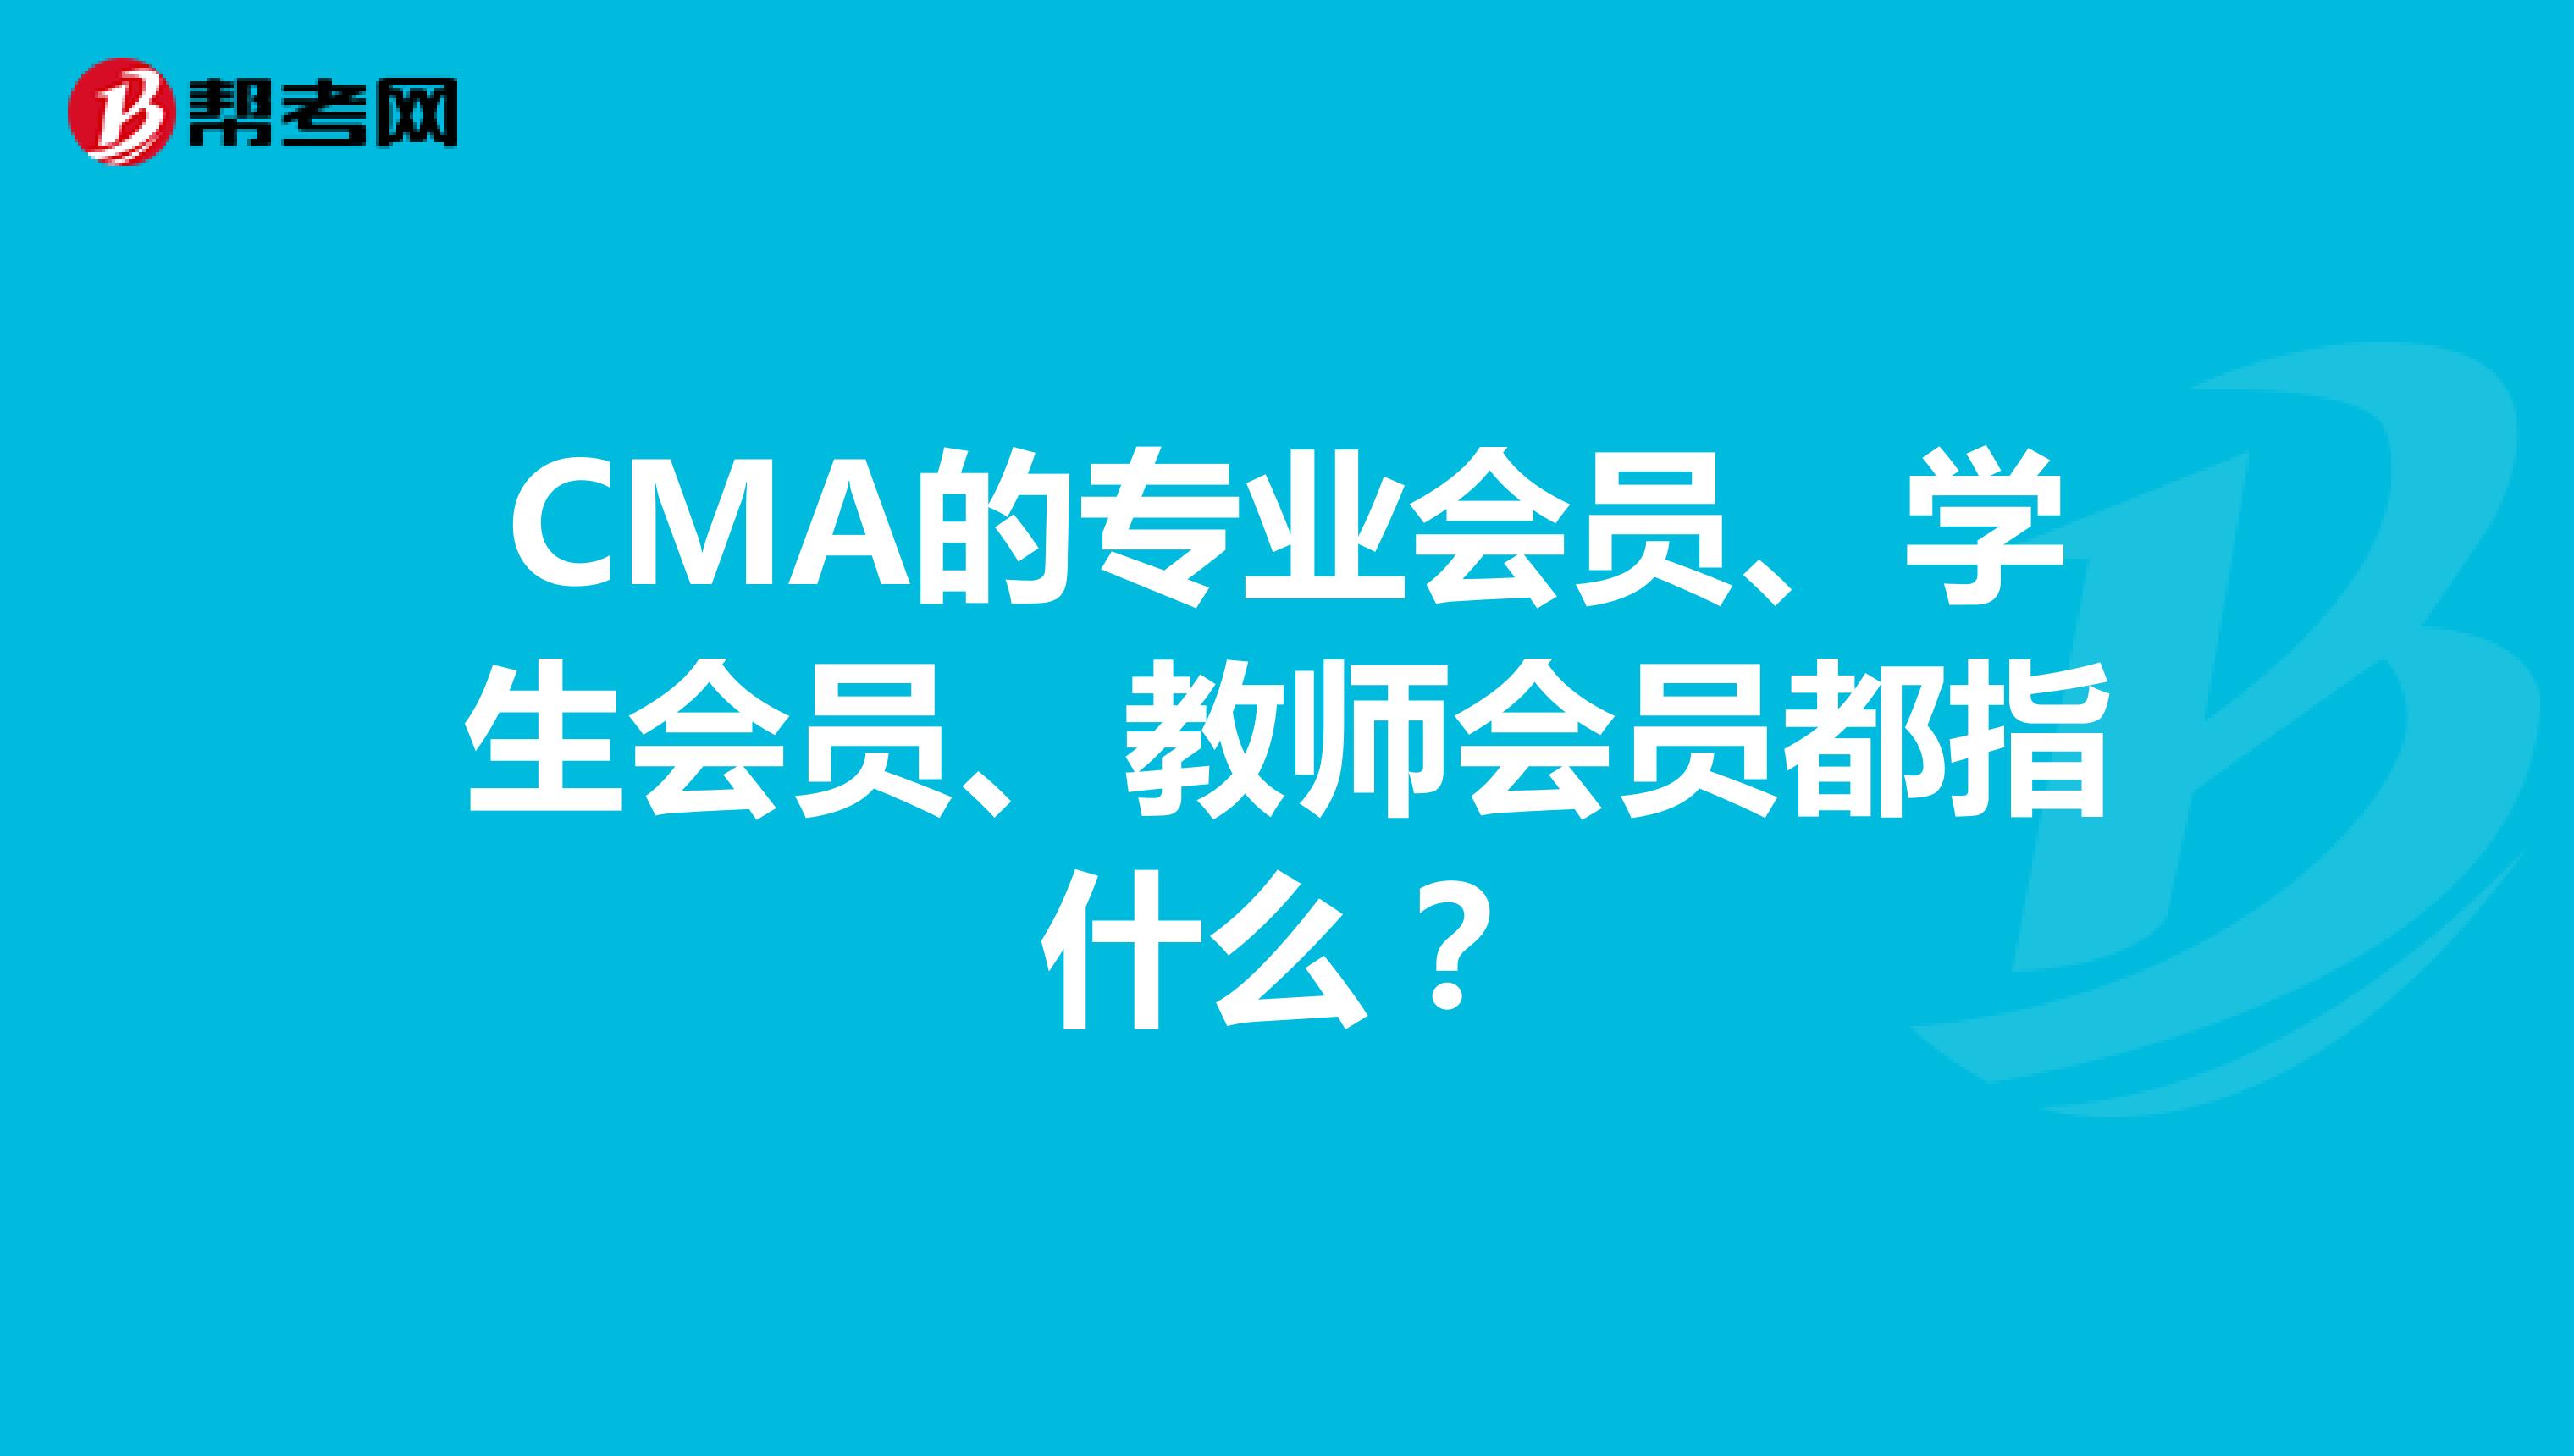 CMA的专业会员、学生会员、教师会员都指什么？